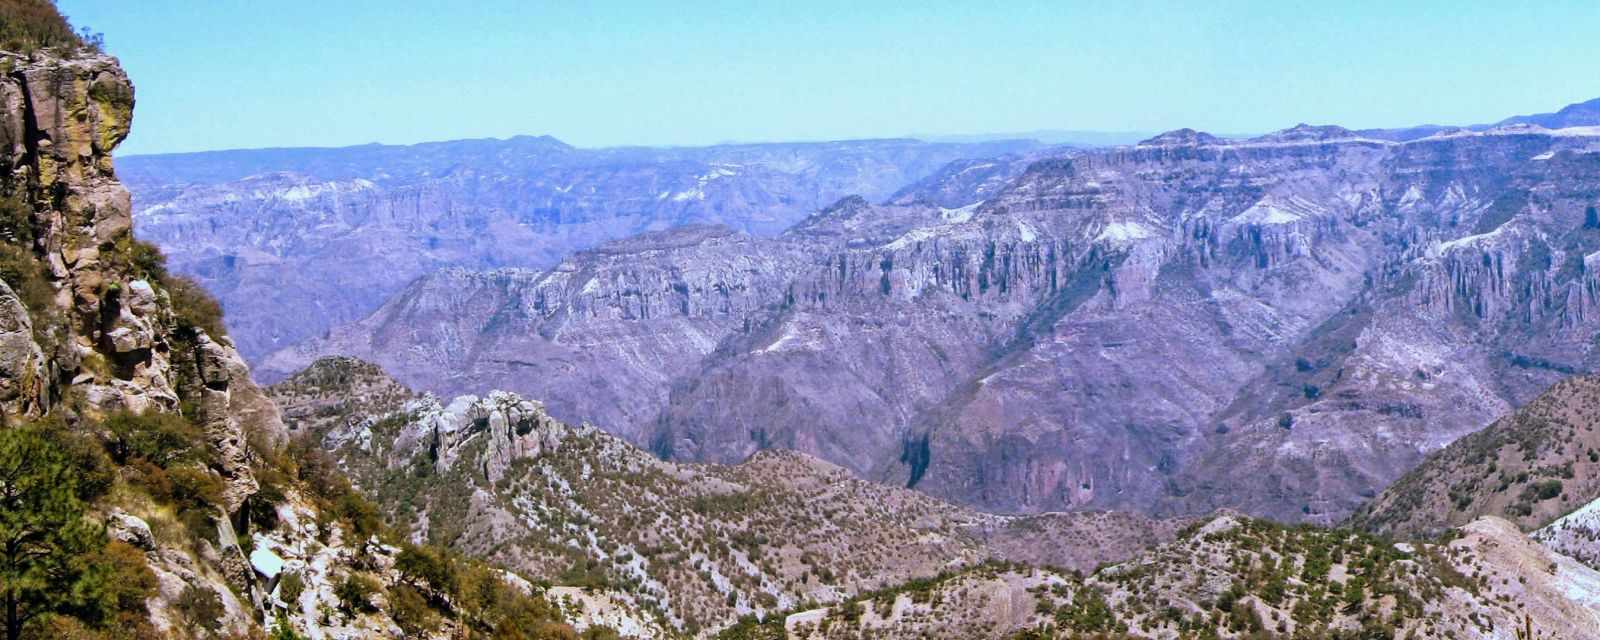 Barranca del Cobre - Copper Canyon Excellent for Hiking